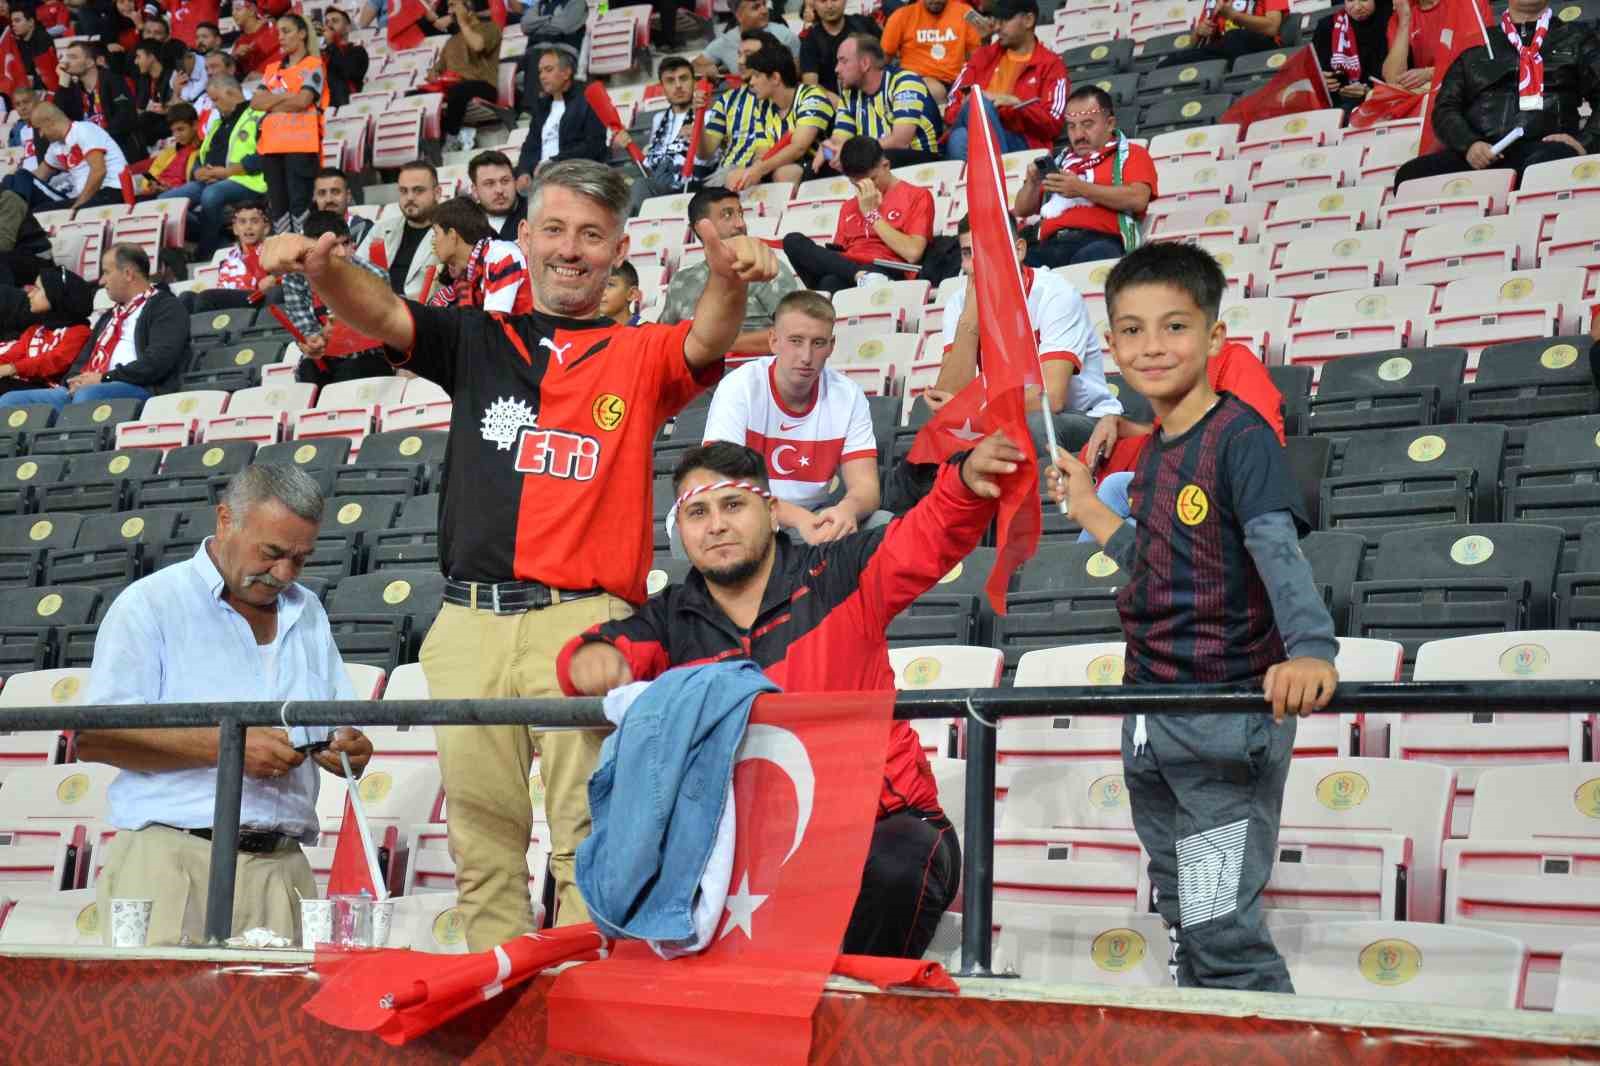 Eskişehirli futbolseverler, Türkiye-Ermenistan maçına hazır